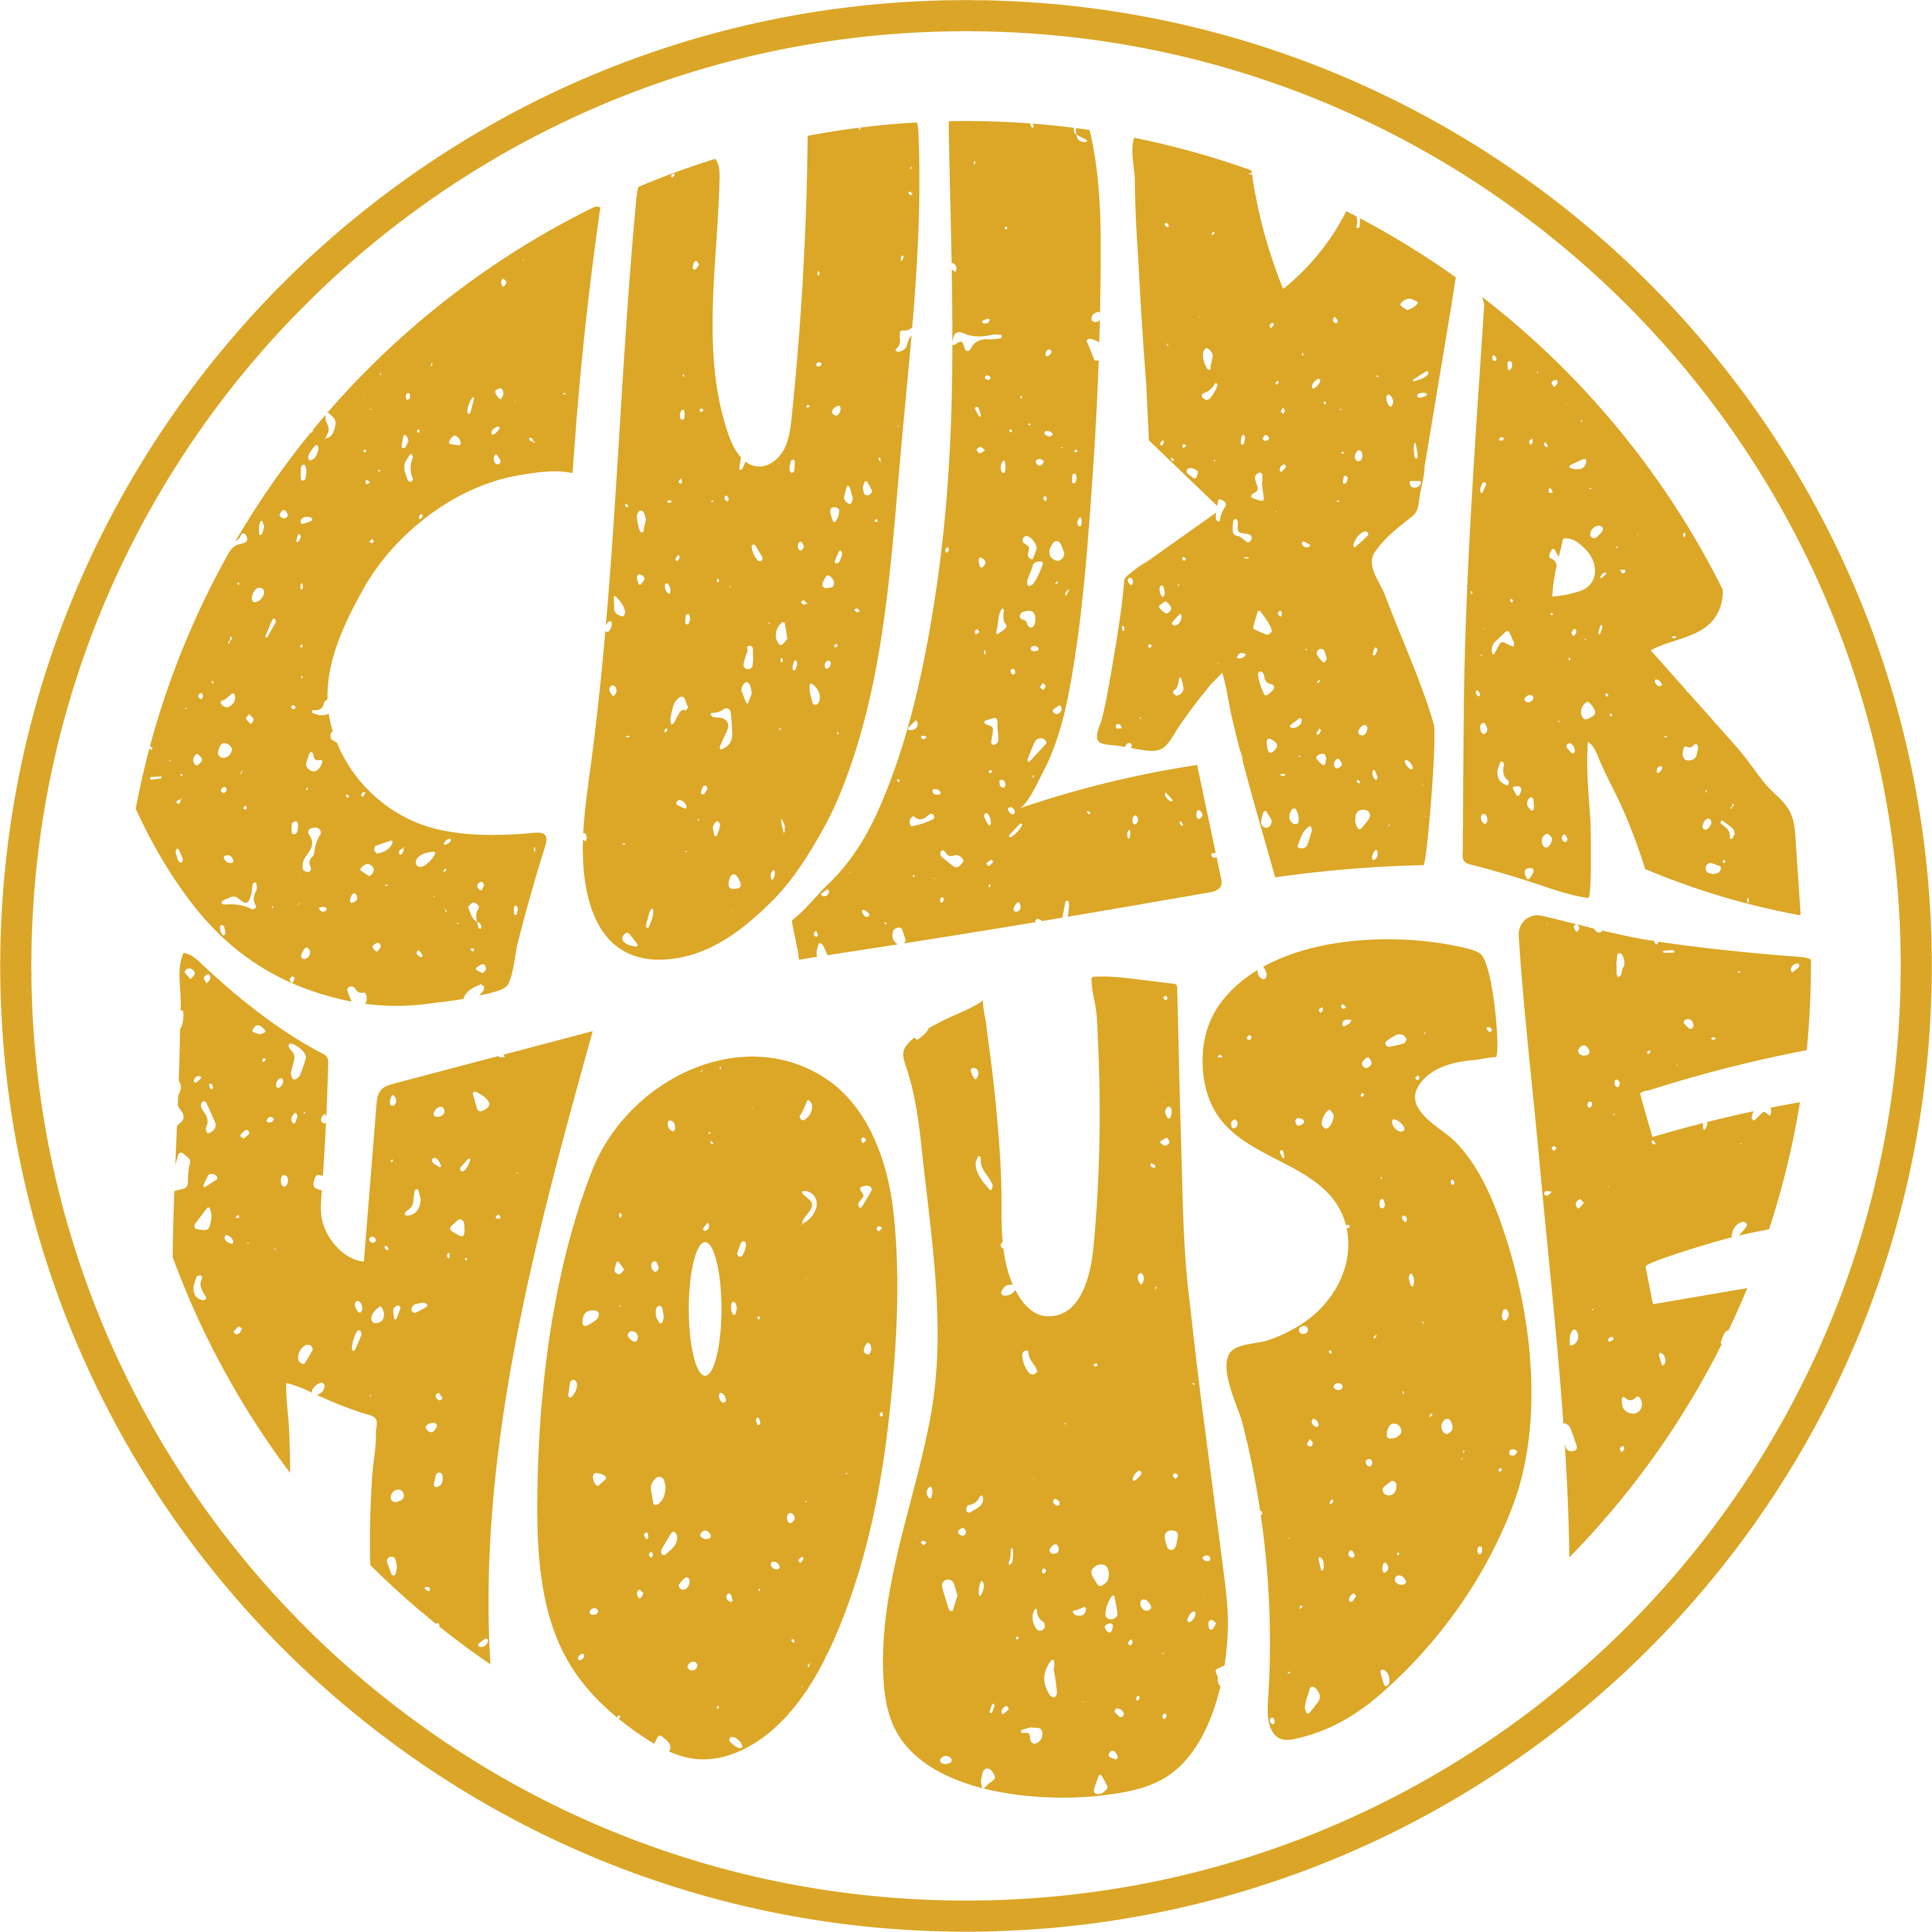 Culxr House logo in yellow